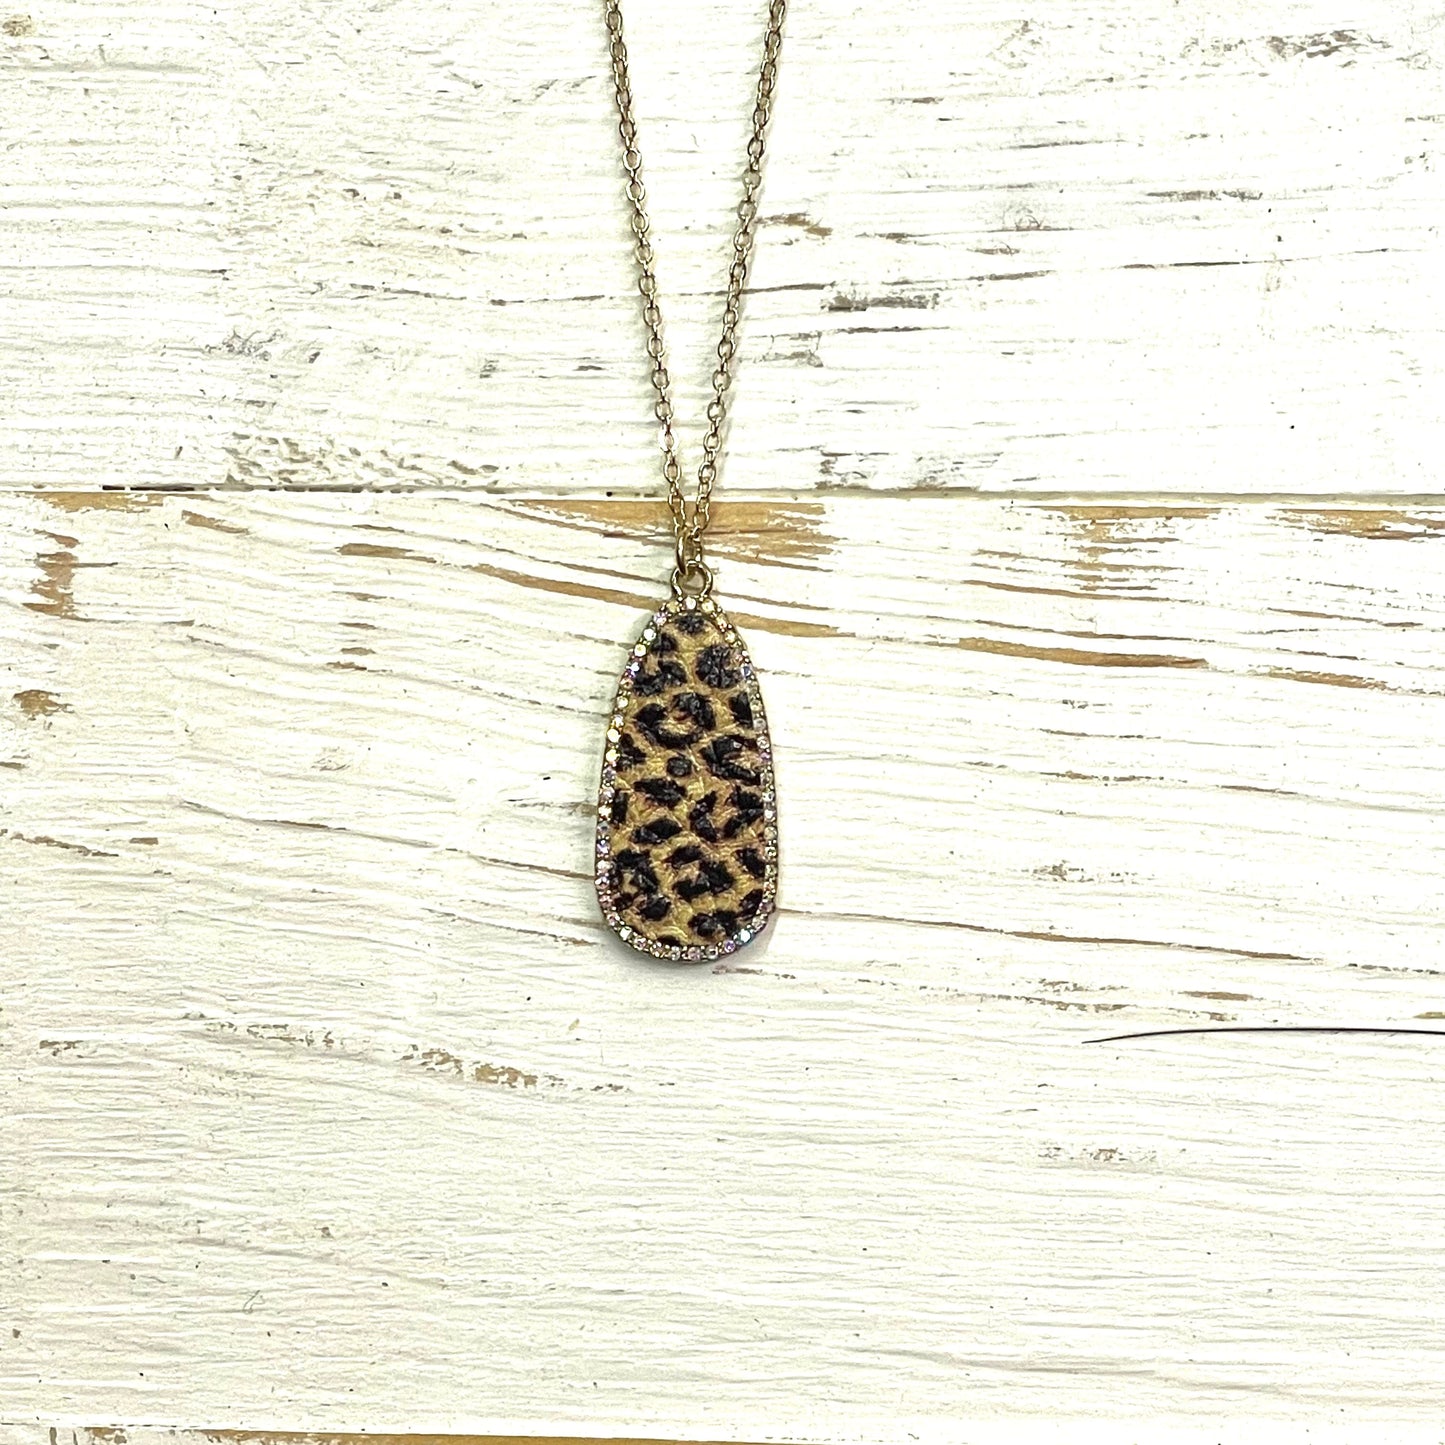 Envy Stylz Boutique Women - Accessories - Necklace Gold with Leopard Pendant Necklace